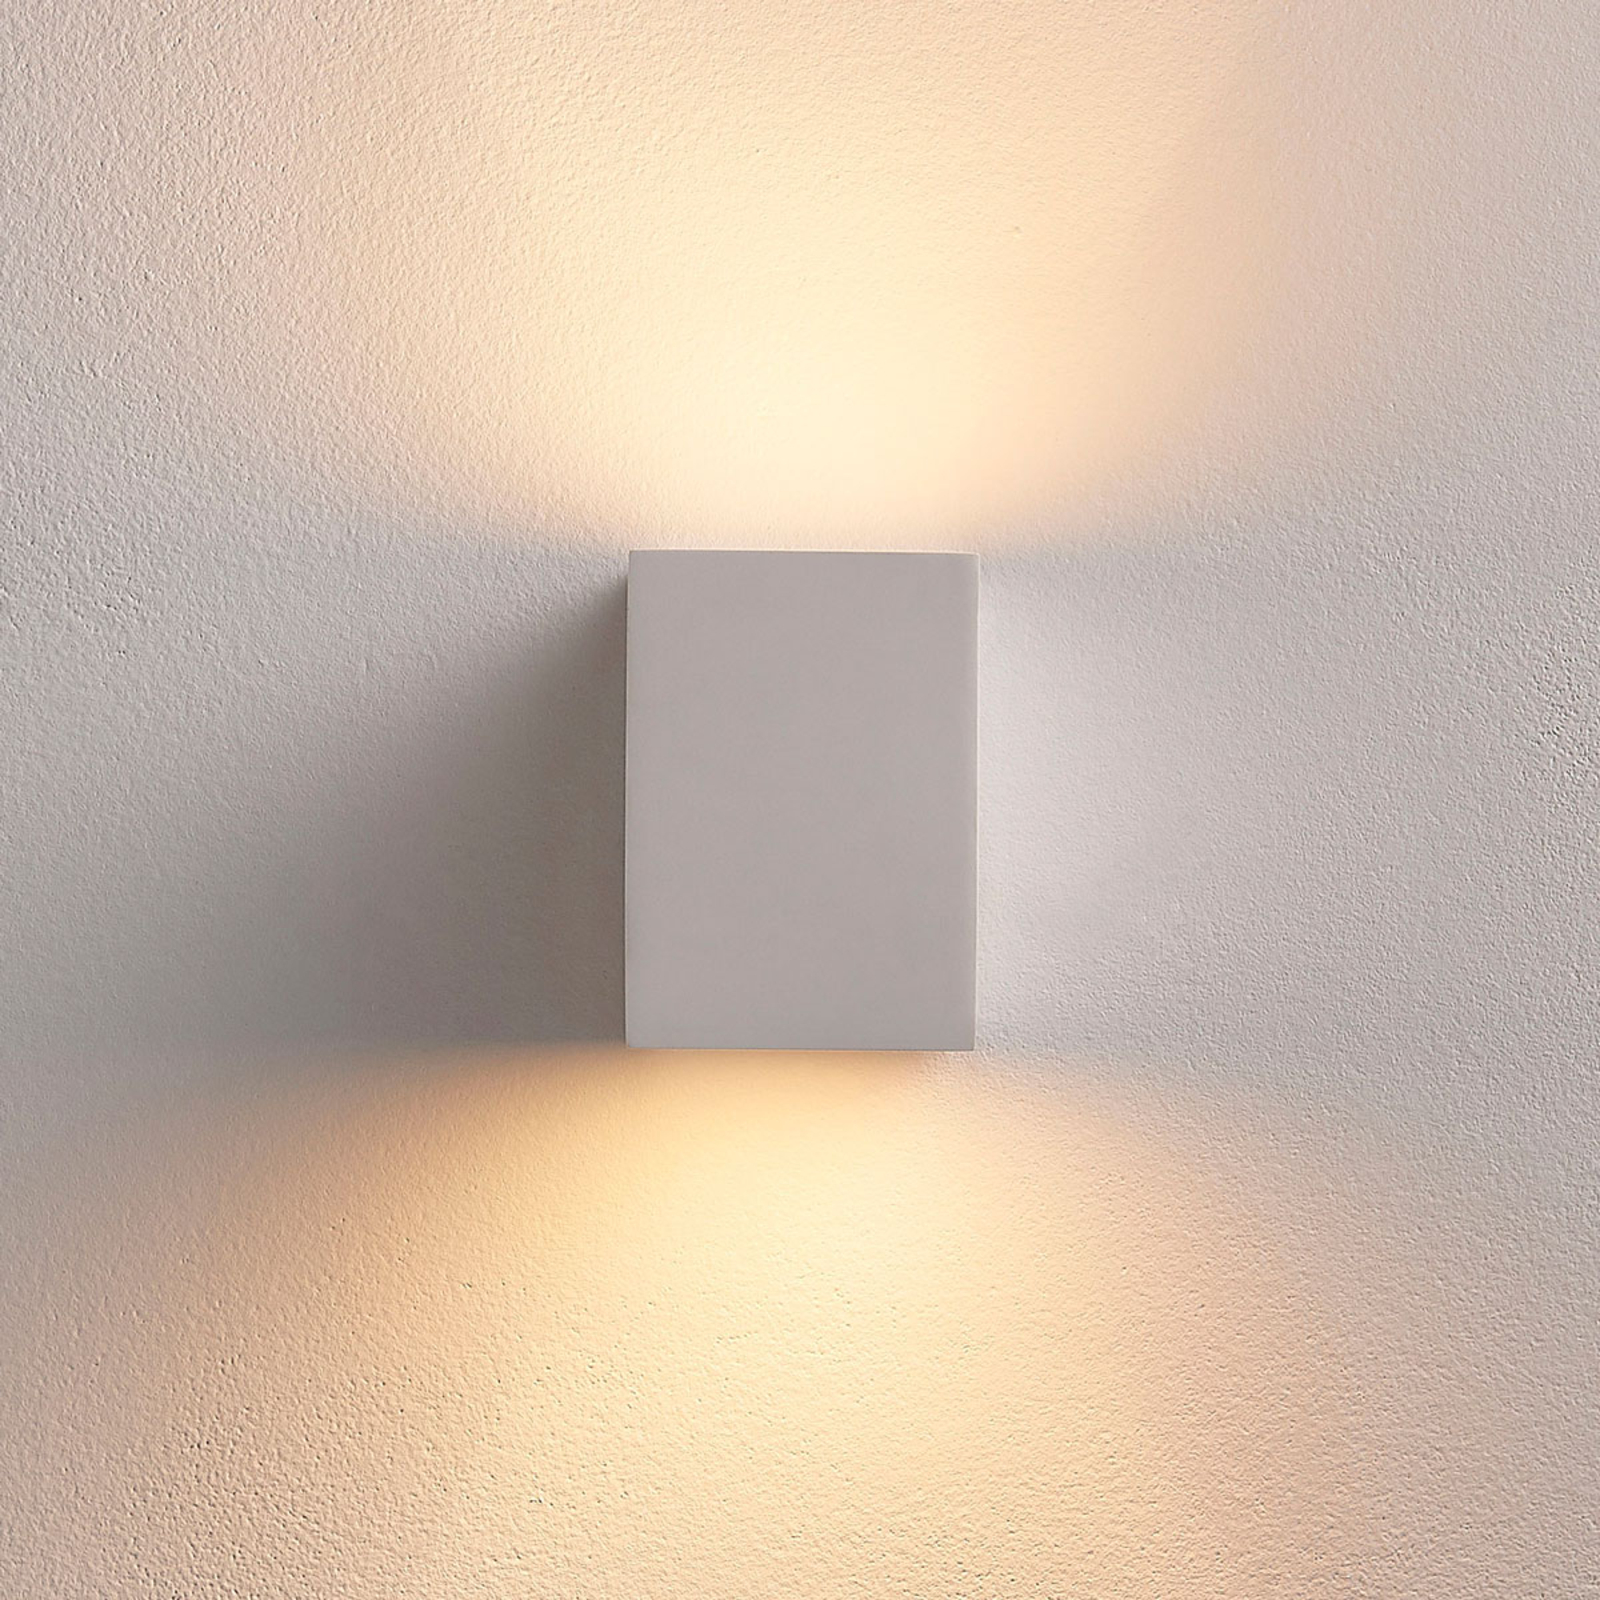 LED-Wandlampe Jannes Eckig Licht Oben Unten Weiß Gips Lampenwelt Leuchte Flur 